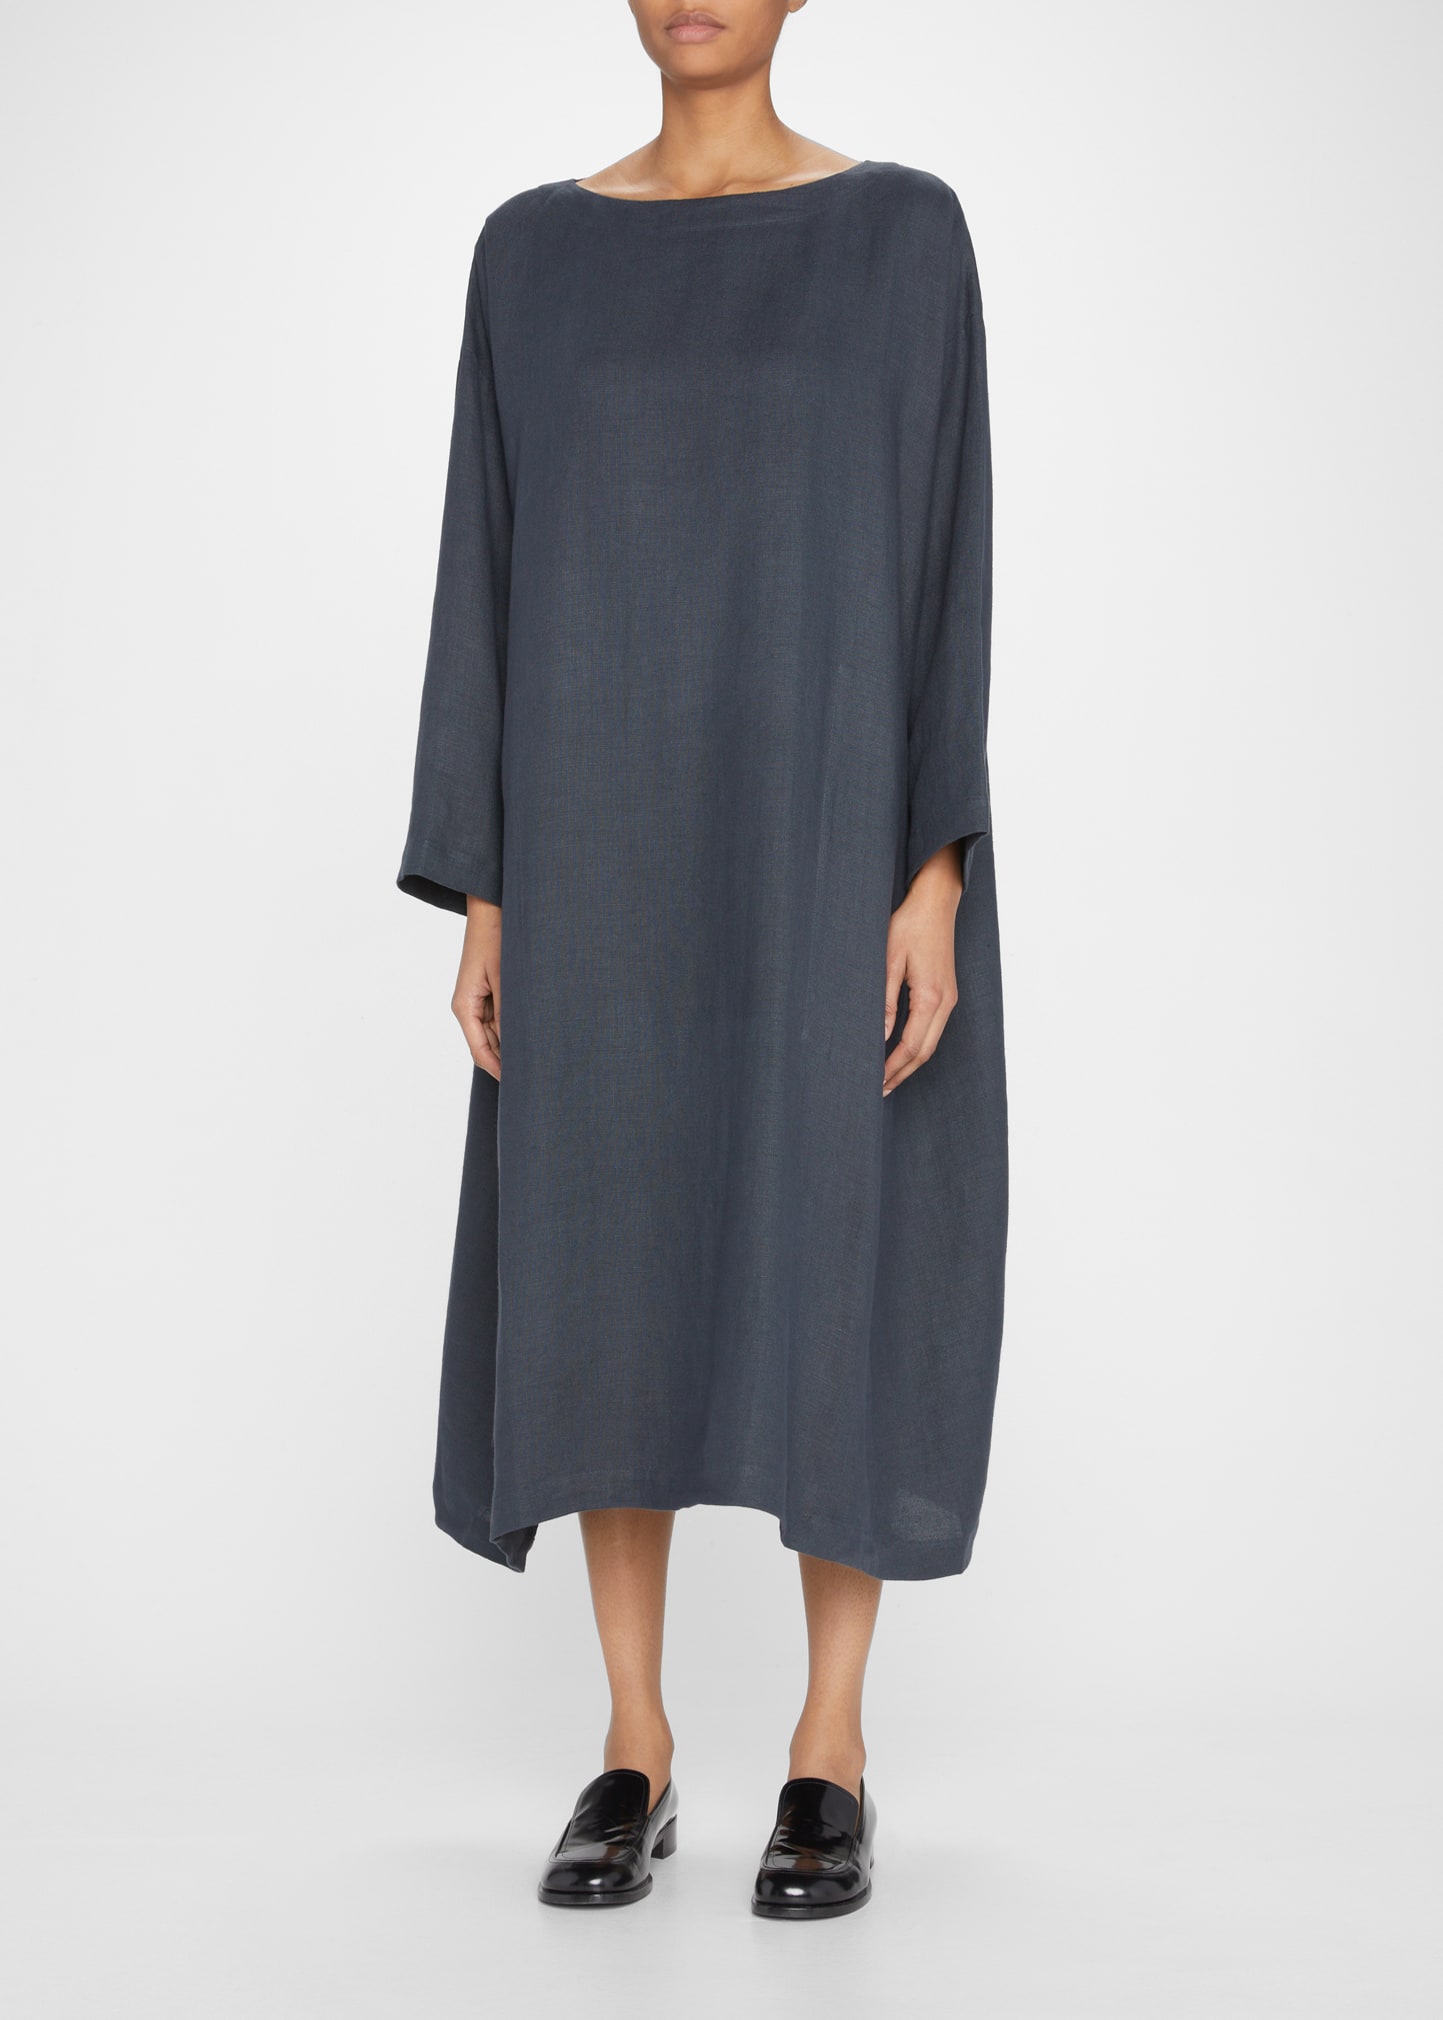 A Line Linen Dress | bergdorfgoodman.com